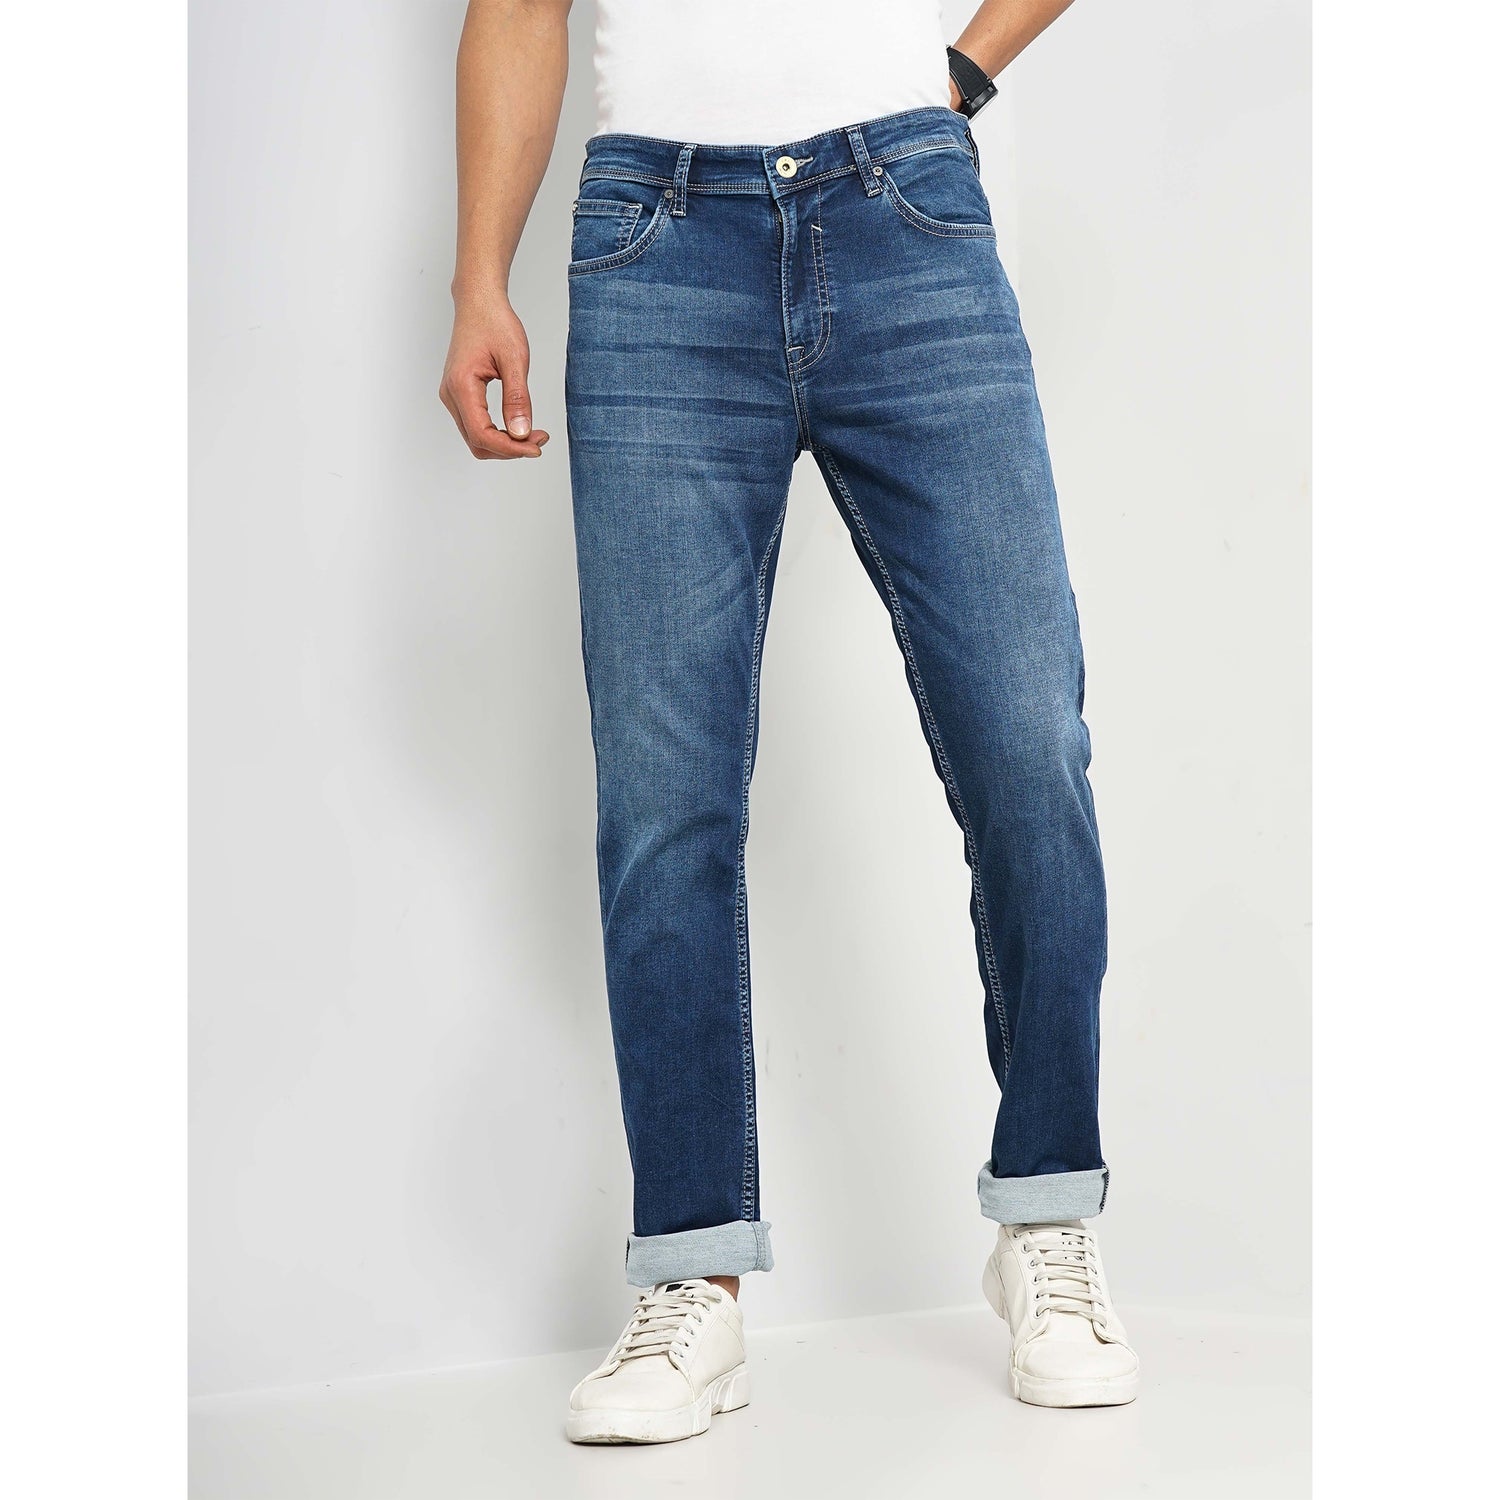 Men's Blue Solid Slim Fit Cotton Jeans (GOGIN25)